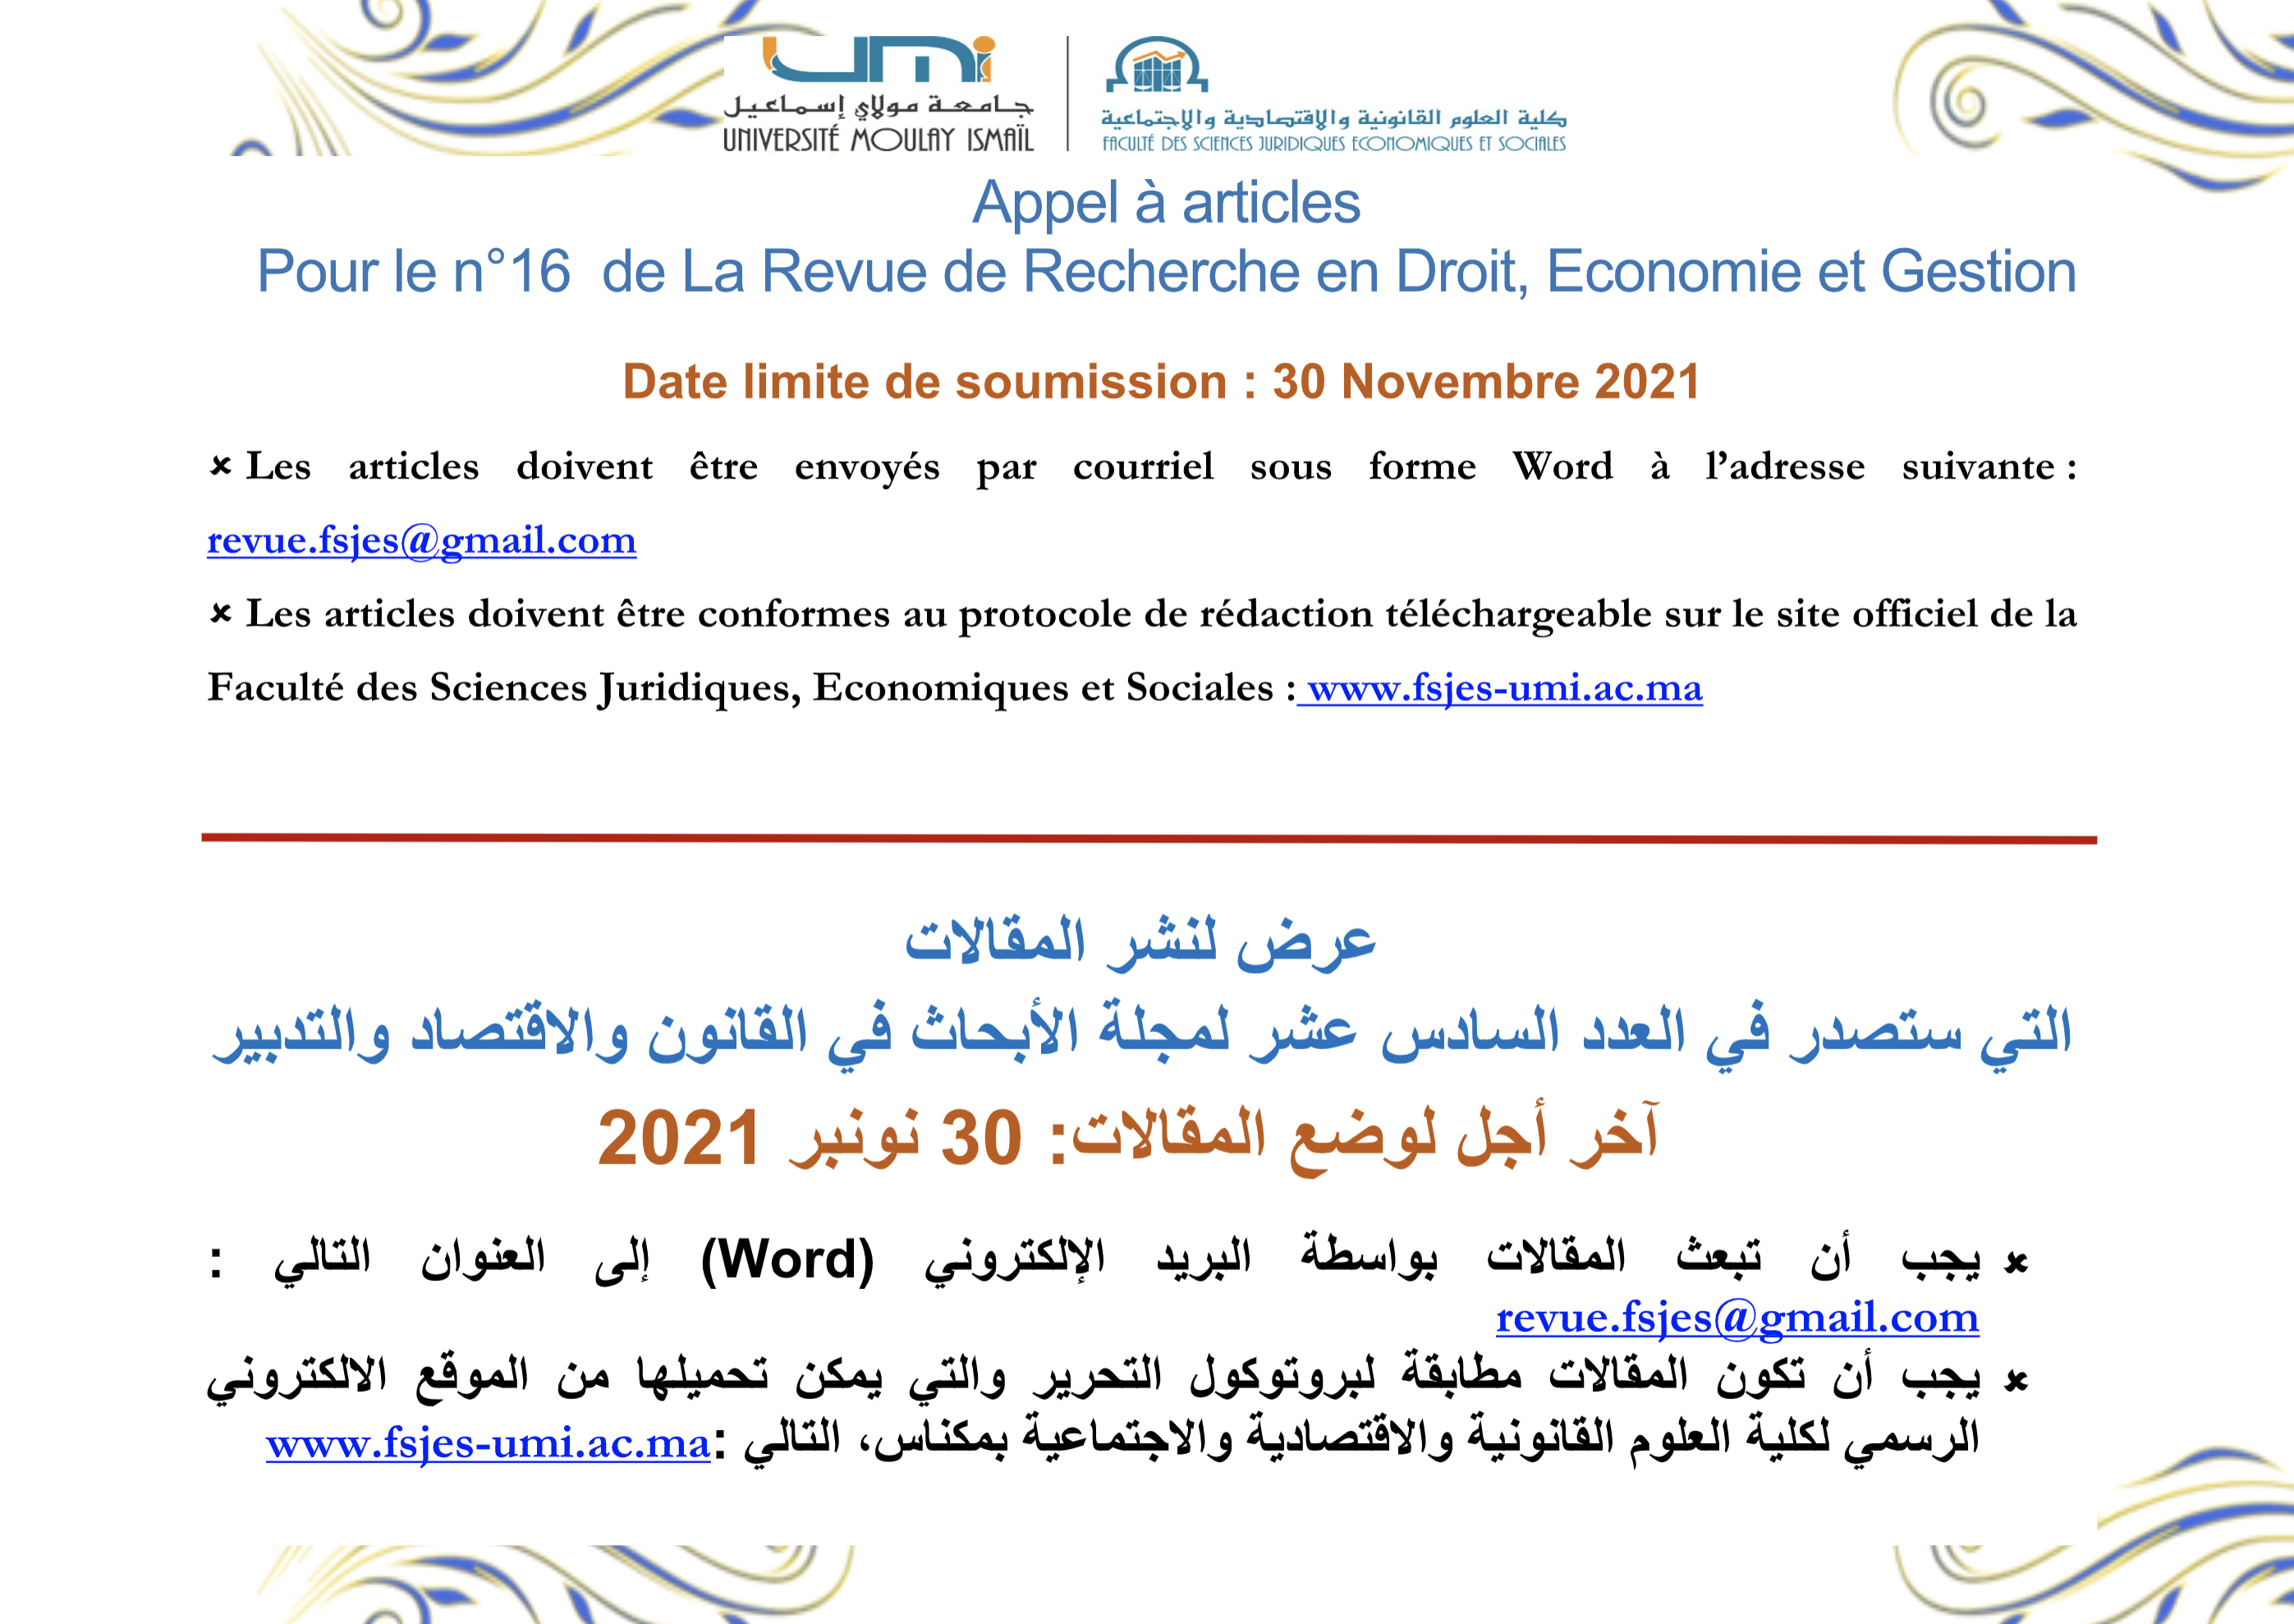 Appel à articles pour le n° 16 de la Revue de Recherche en Droit, Economie et Gestion